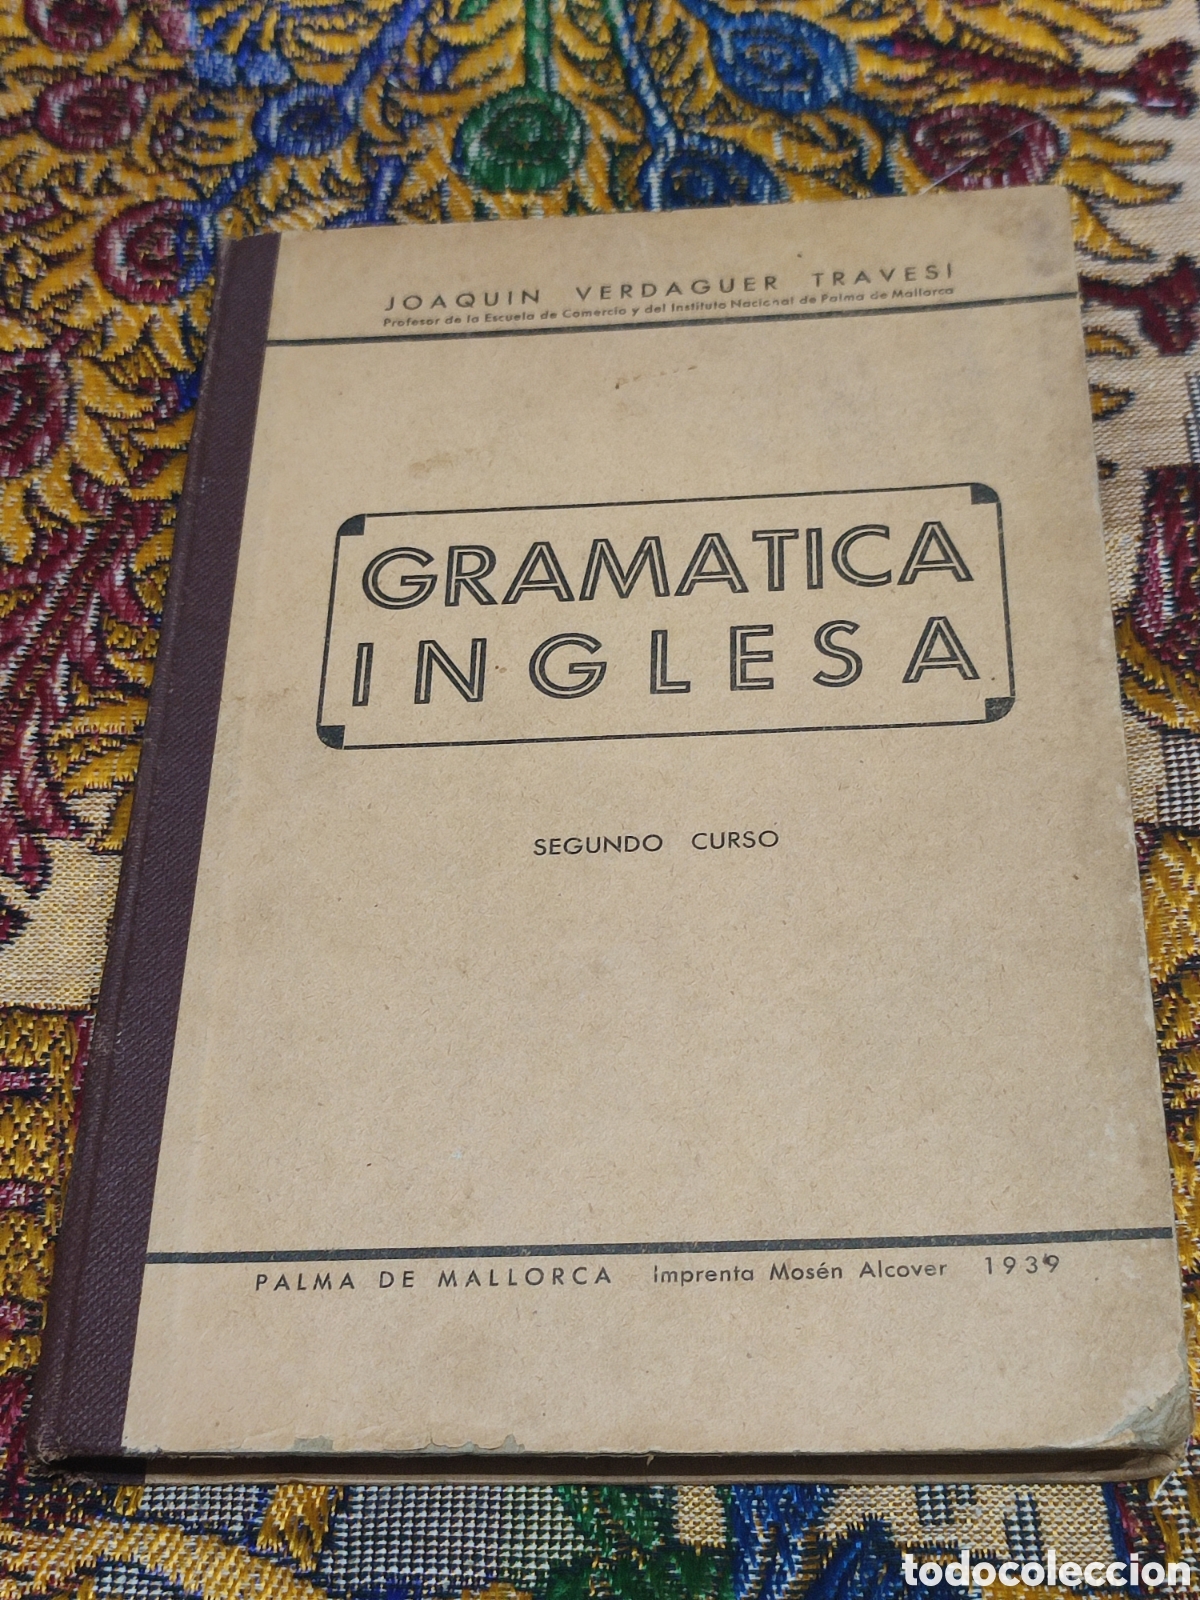 gramática inglesa primer curso 1939 - Compra venta en todocoleccion